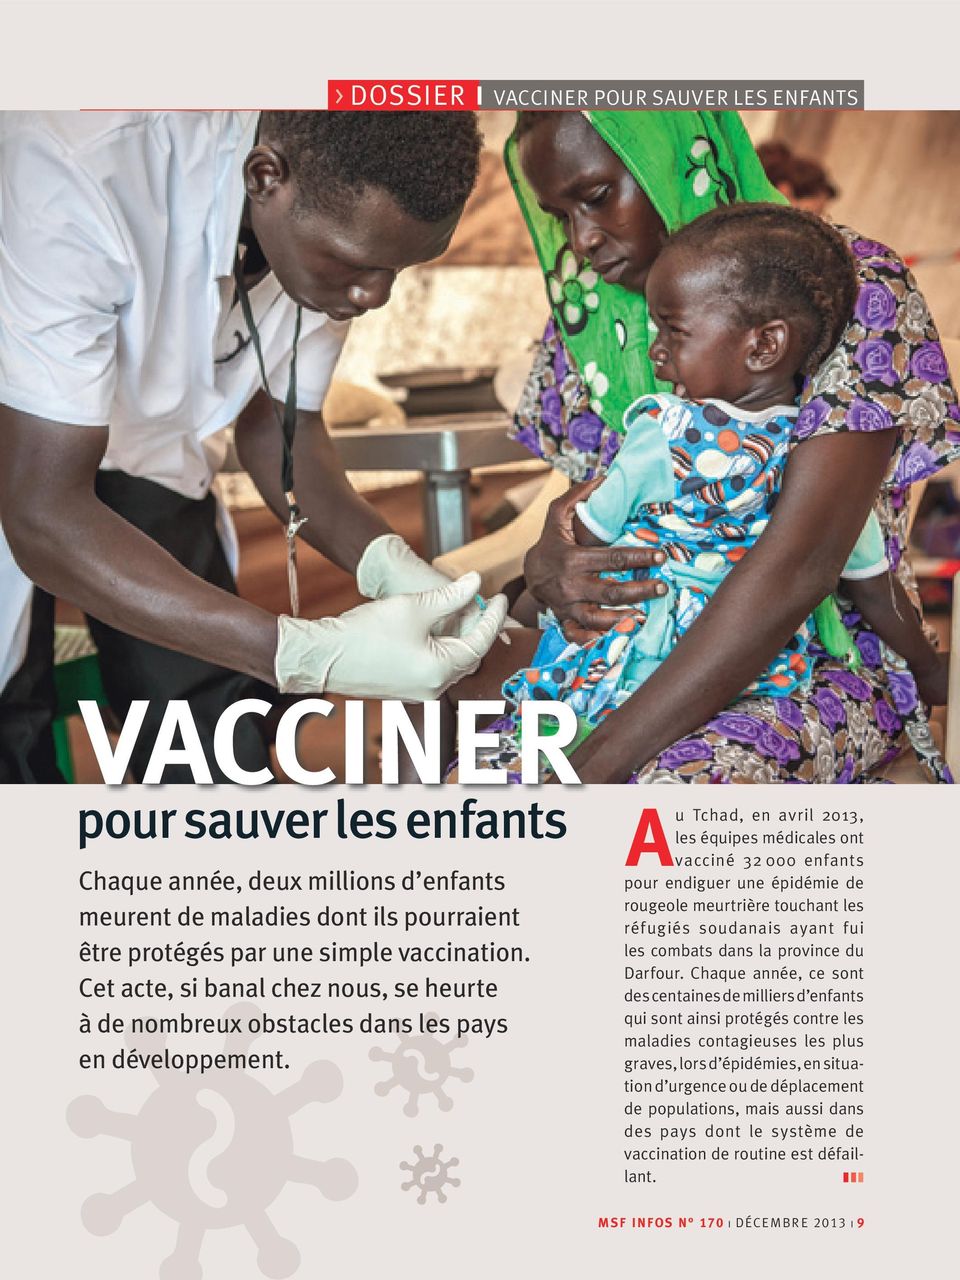 A u Tchad, en avril 2013, les équipes médicales ont vacciné 32 000 enfants pour endiguer une épidémie de rougeole meurtrière touchant les réfugiés soudanais ayant fui les combats dans la province du